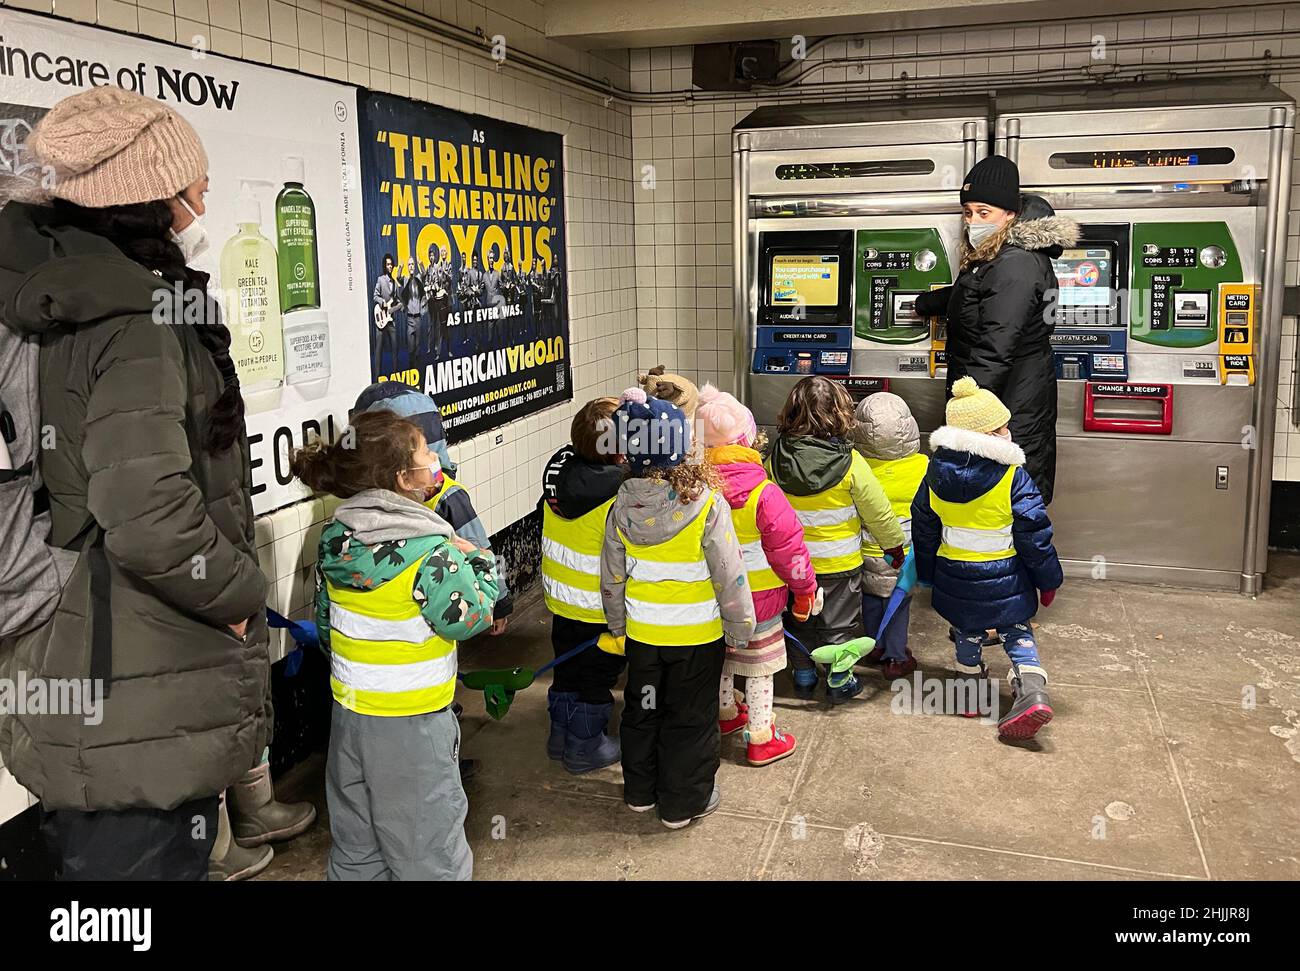 La classe pre-scuola impara come funziona la macchina metrocard alla stazione della metropolitana per prendere il treno della metropolitana. Stazione ferroviaria F Fort Hamilton Parkway a Brooklyn, New York. Foto Stock